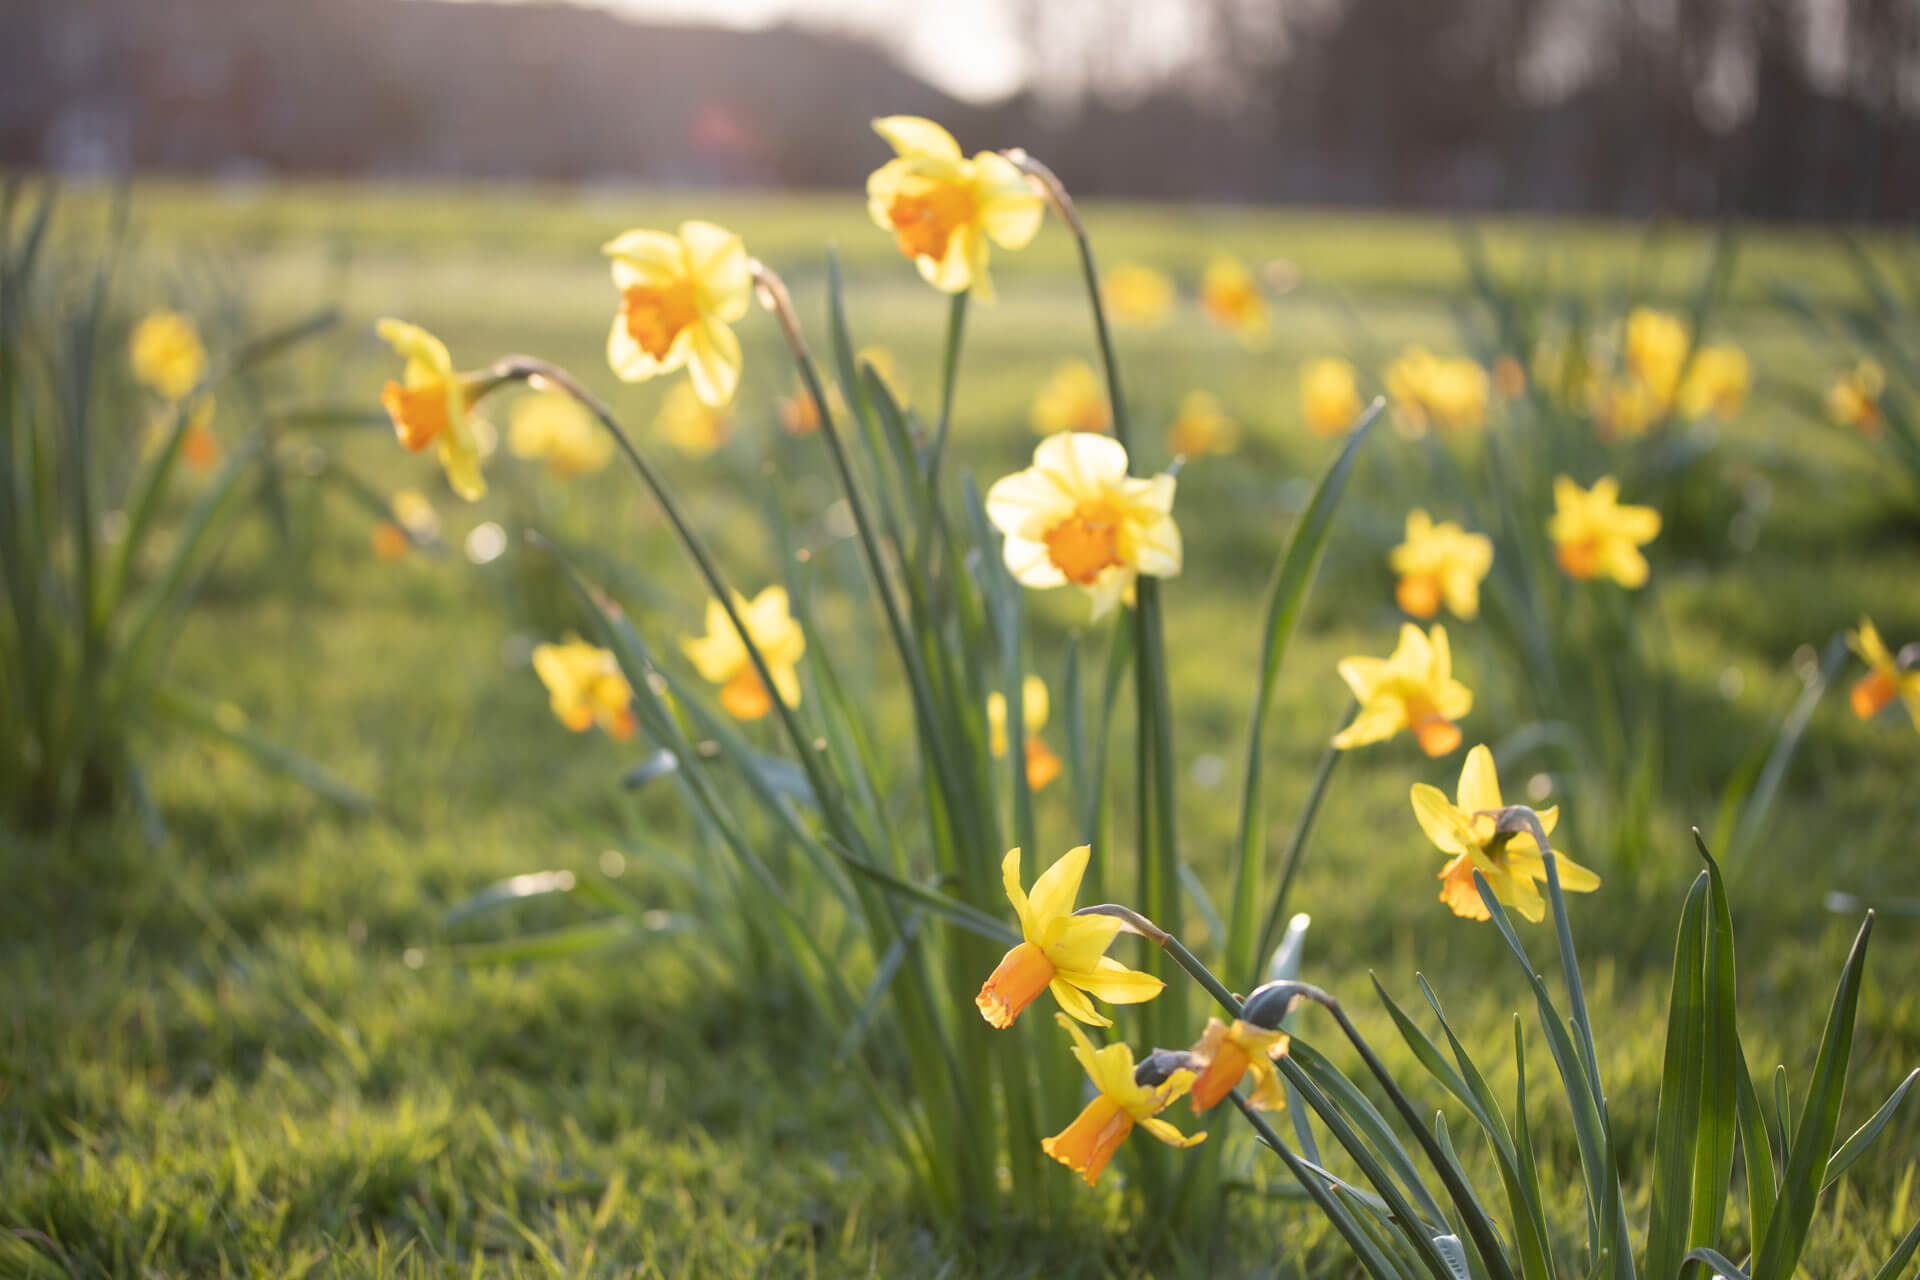 Daffodils in a garden